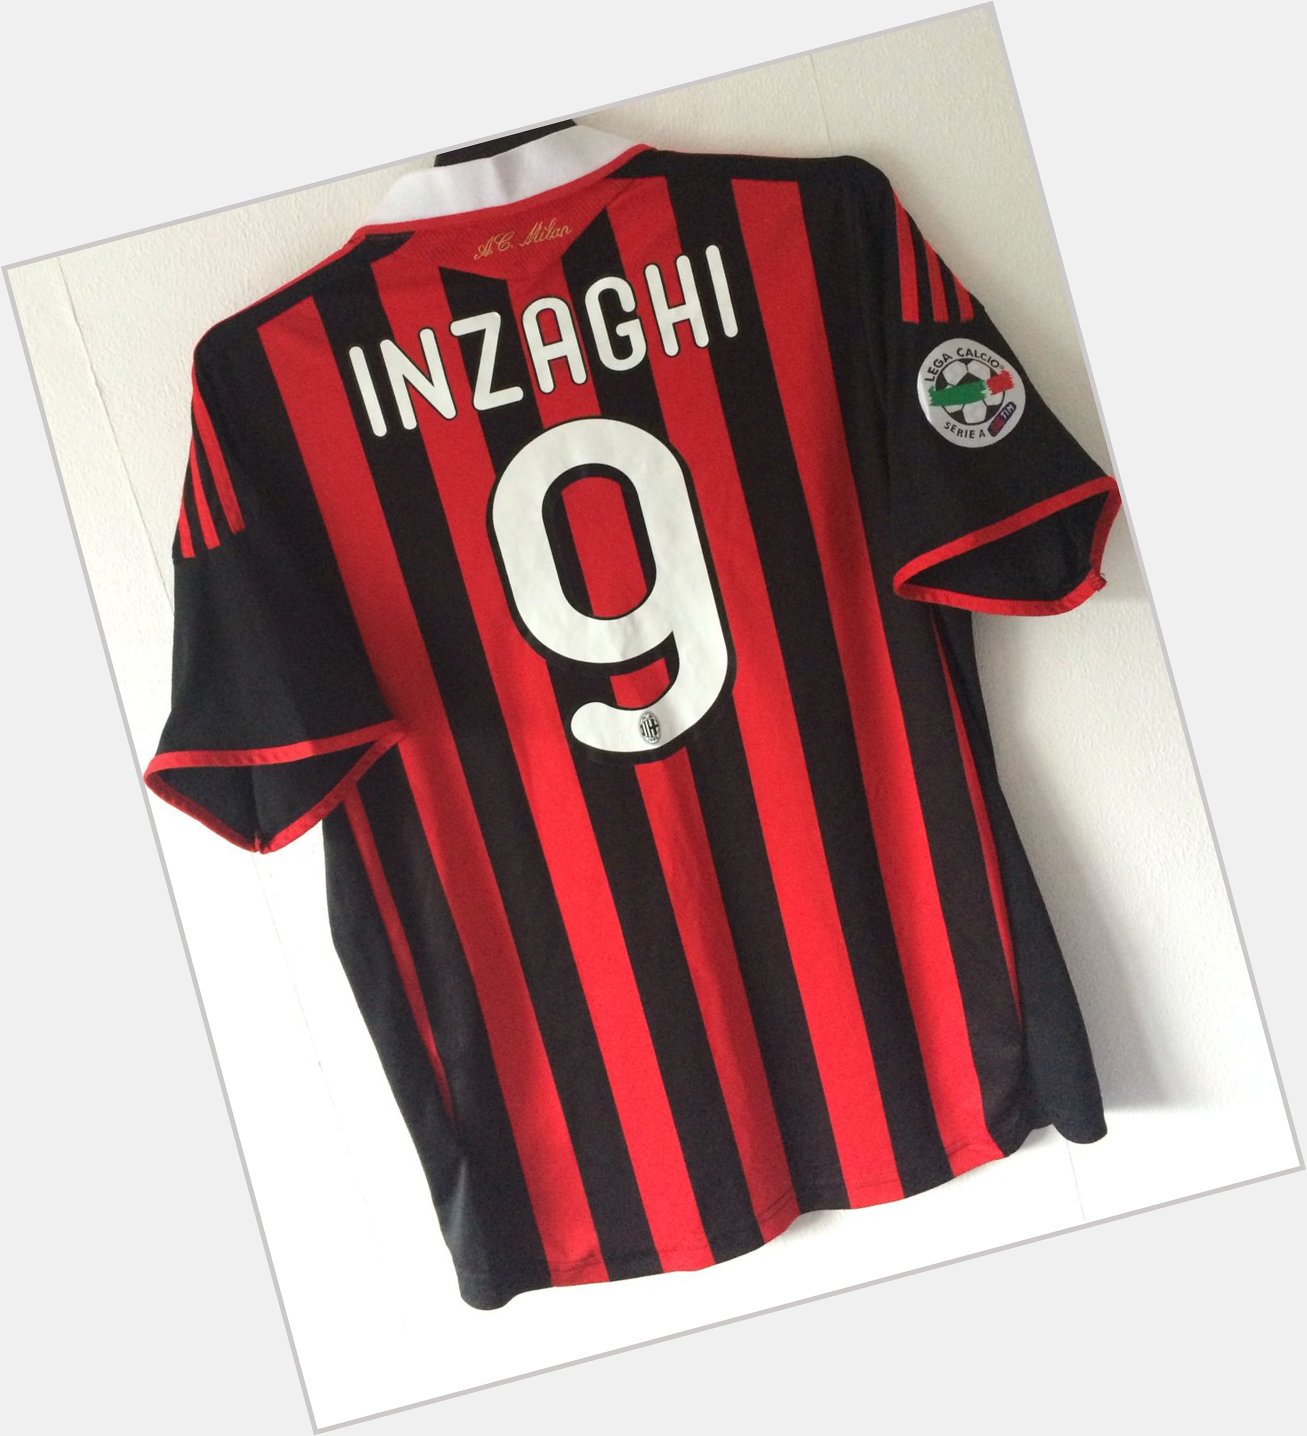 Happy Birthday Filippo Inzaghi 44 today! 